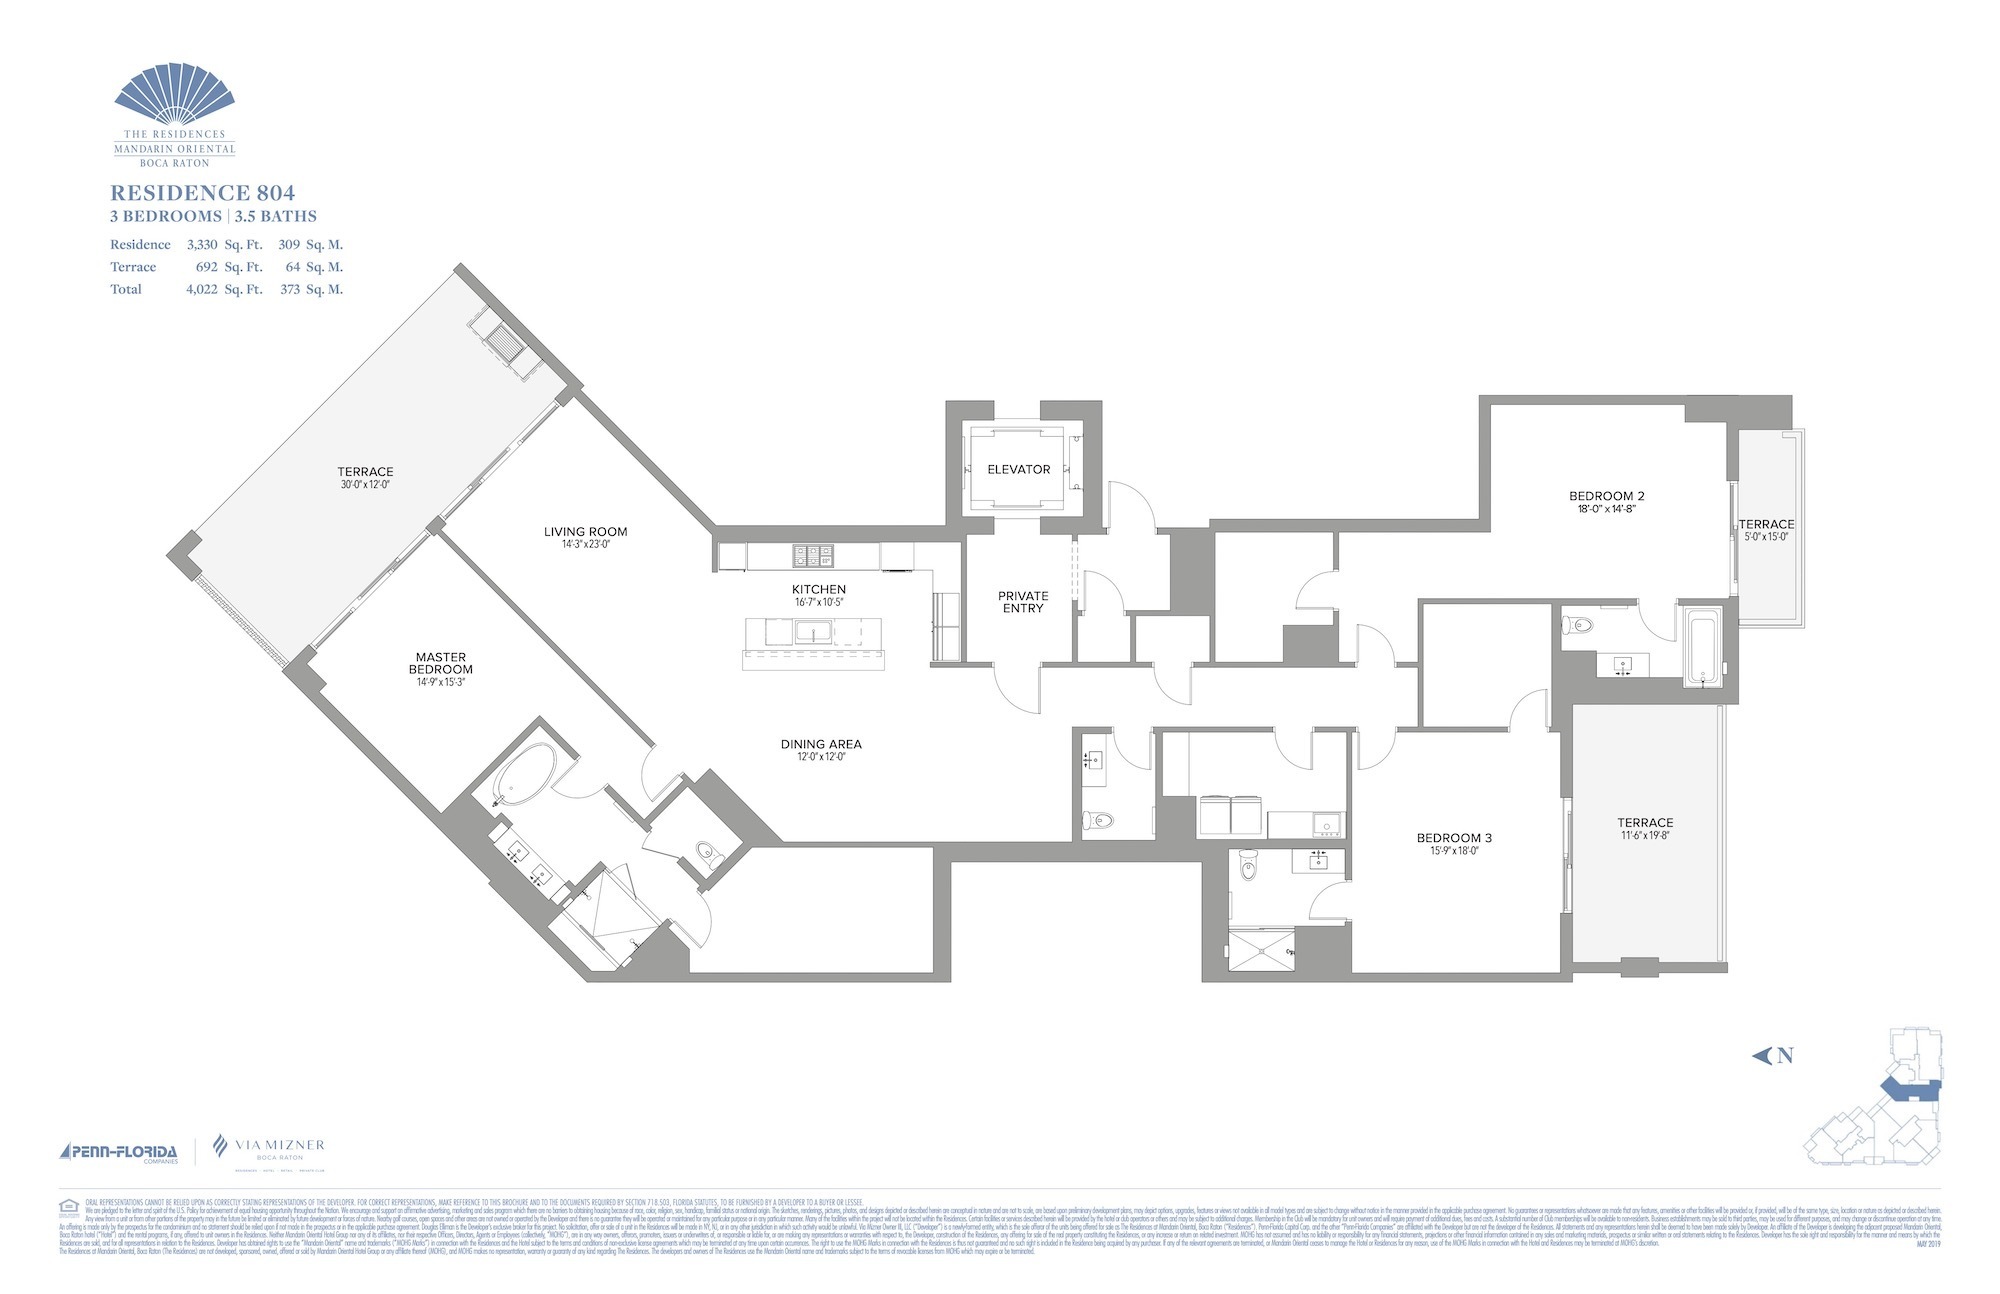 Floor Plan for Residence at Mandarin Oriental Floorplans, Residence 804